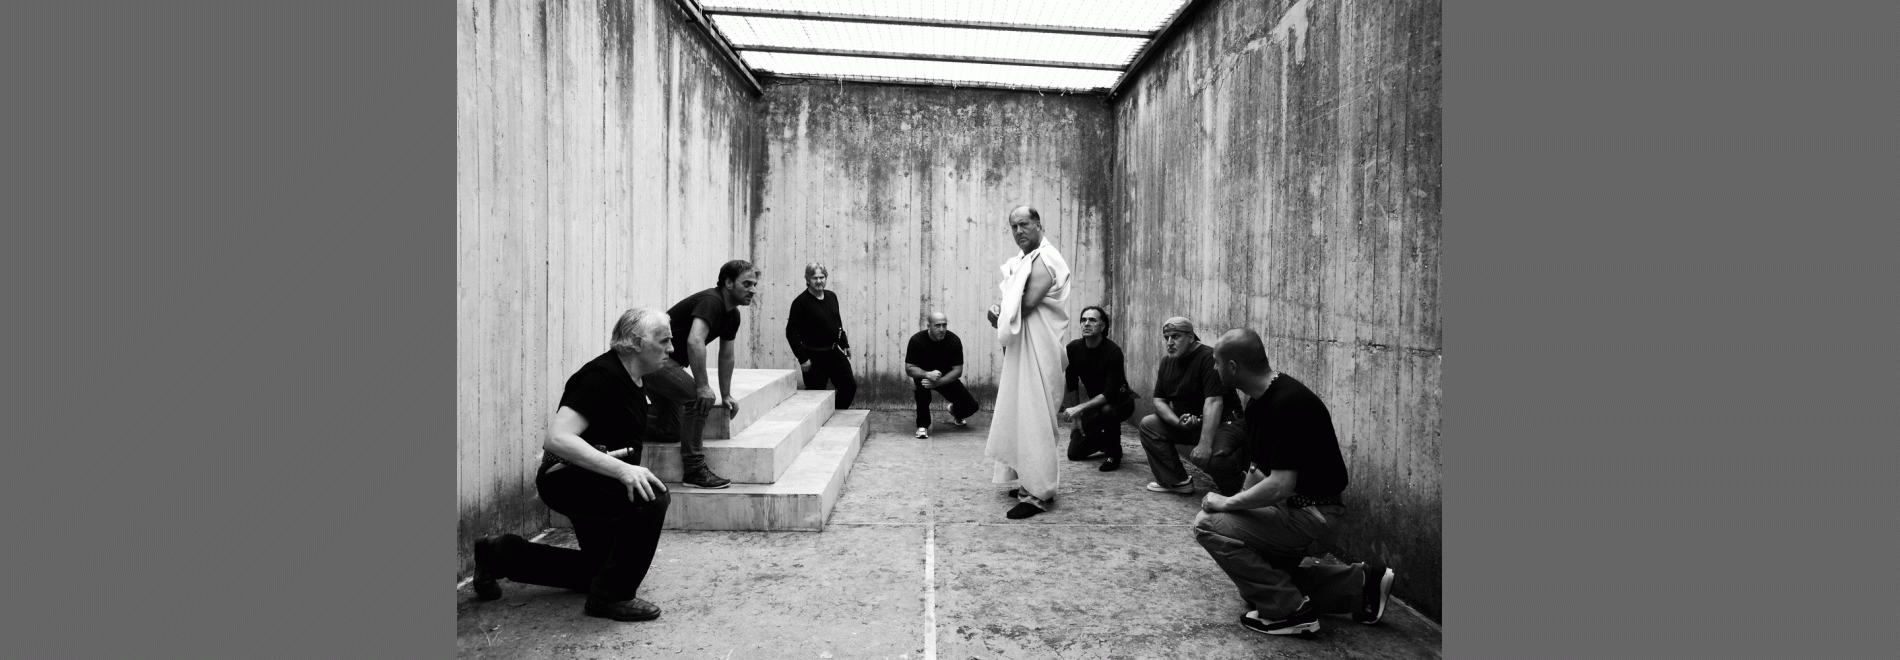 Cesare deve morire (Paolo Taviani, Vittorio Taviani, 2012)